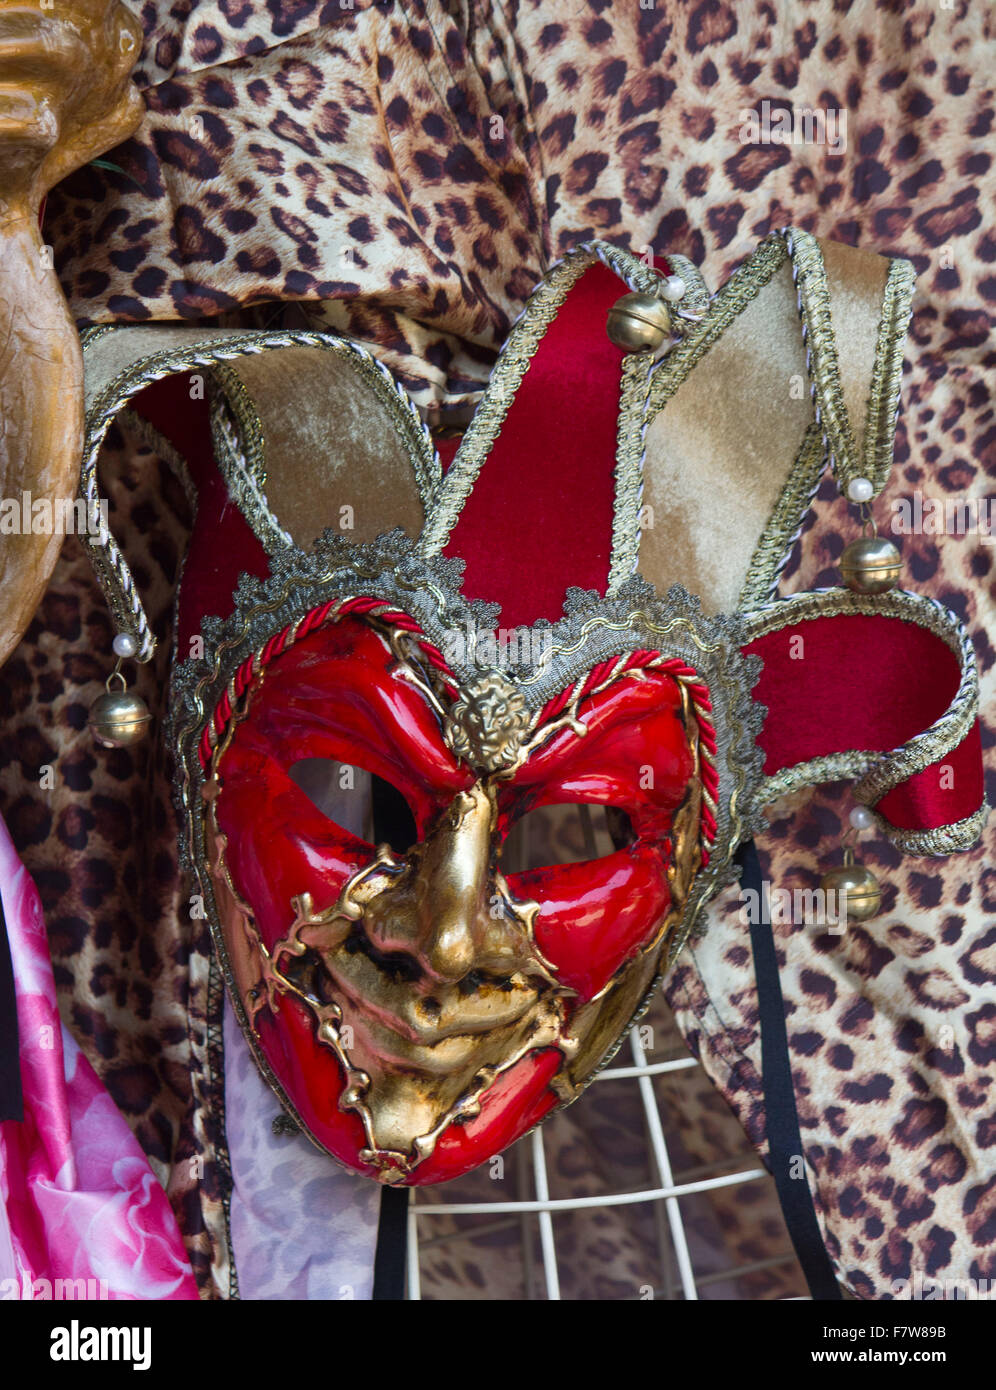 Les masques de carnaval vénitien typique dans un marché dans la région Veneto de l'Italie Banque D'Images